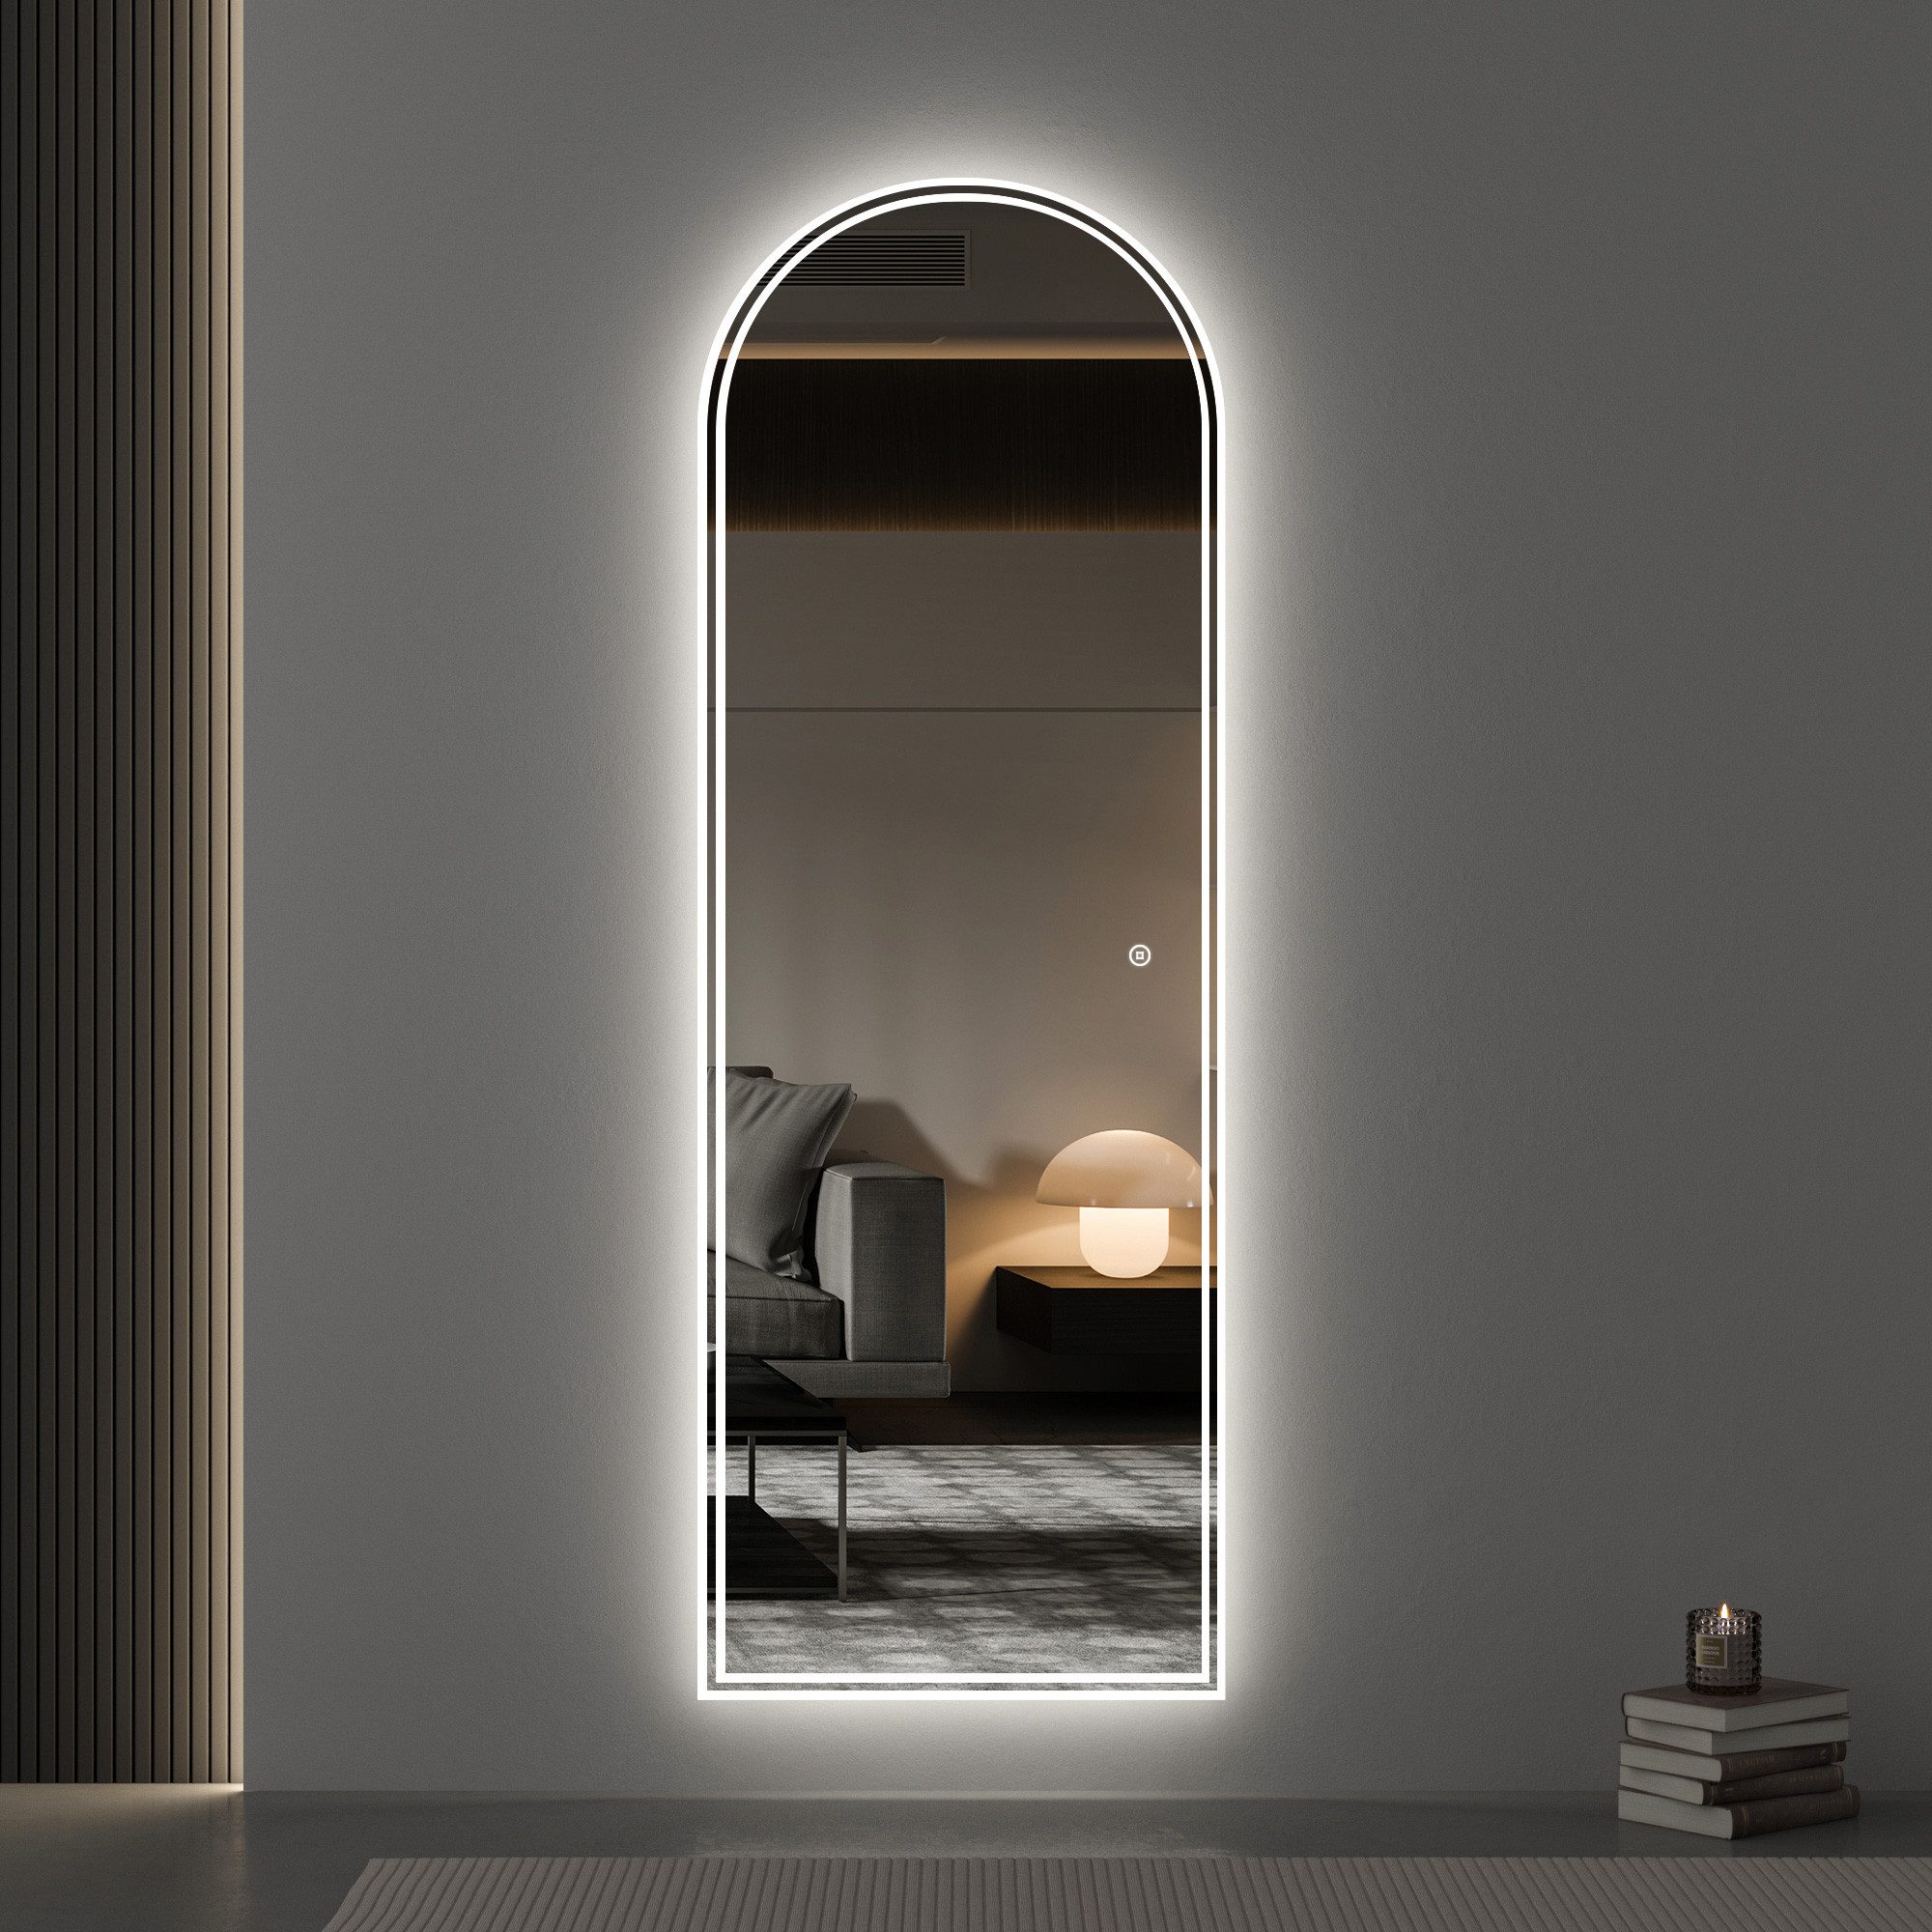 WDWRITTI Spiegel LED für Wohnzimmer Schlafzimmer Flur Garderobe Hotel Friseurladen (Ganzkörperspiegel mit Beleuchtung, 150x50, 140x40), 3Lichtfarben, Dimmbar, Speicherfunktion